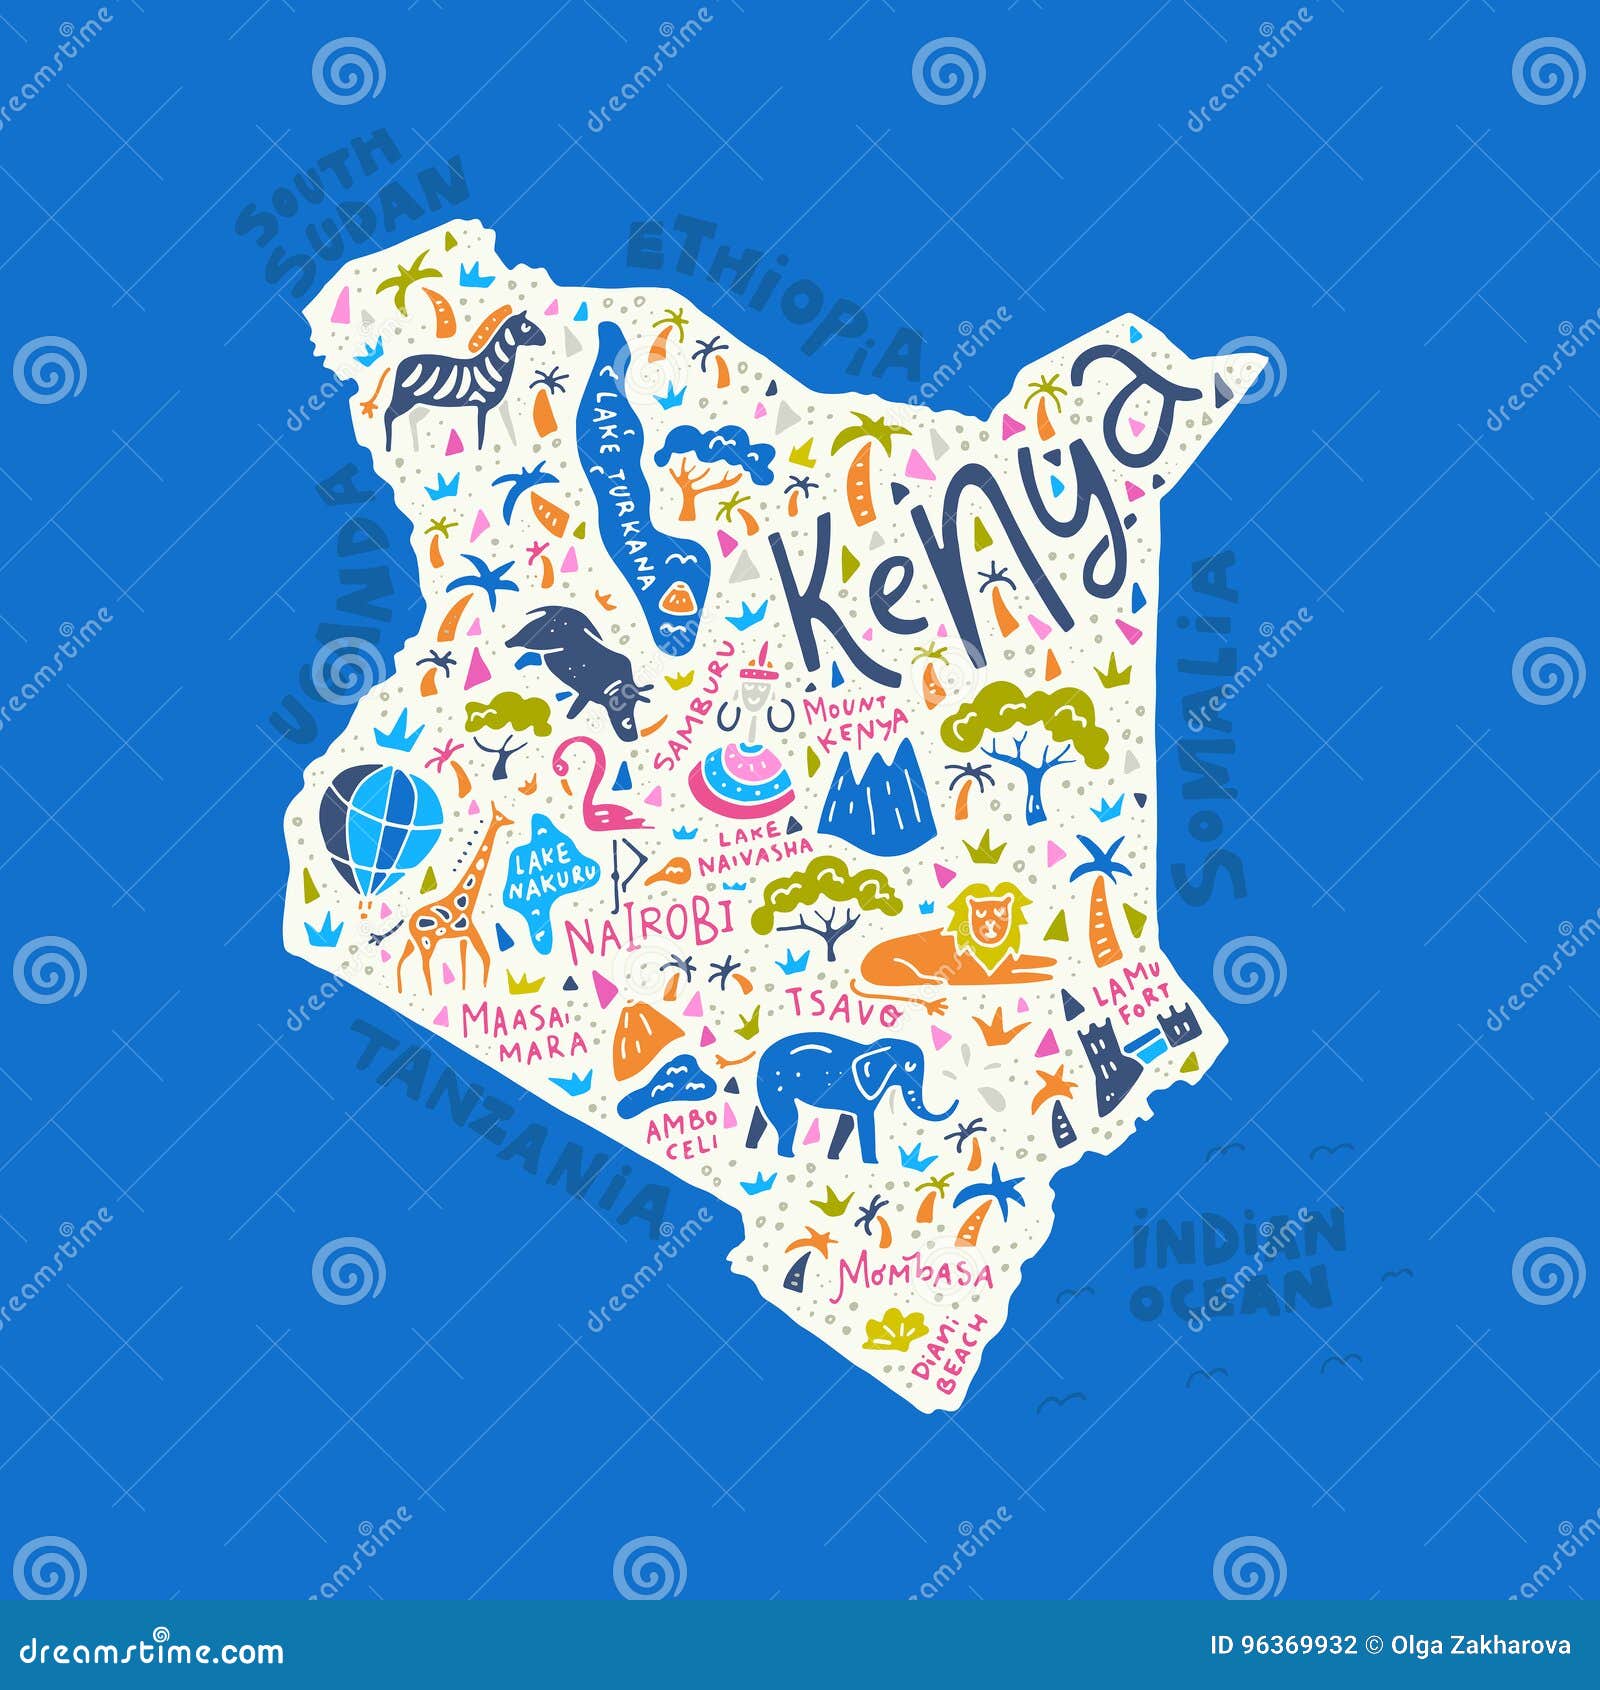 cartoon map of kenya